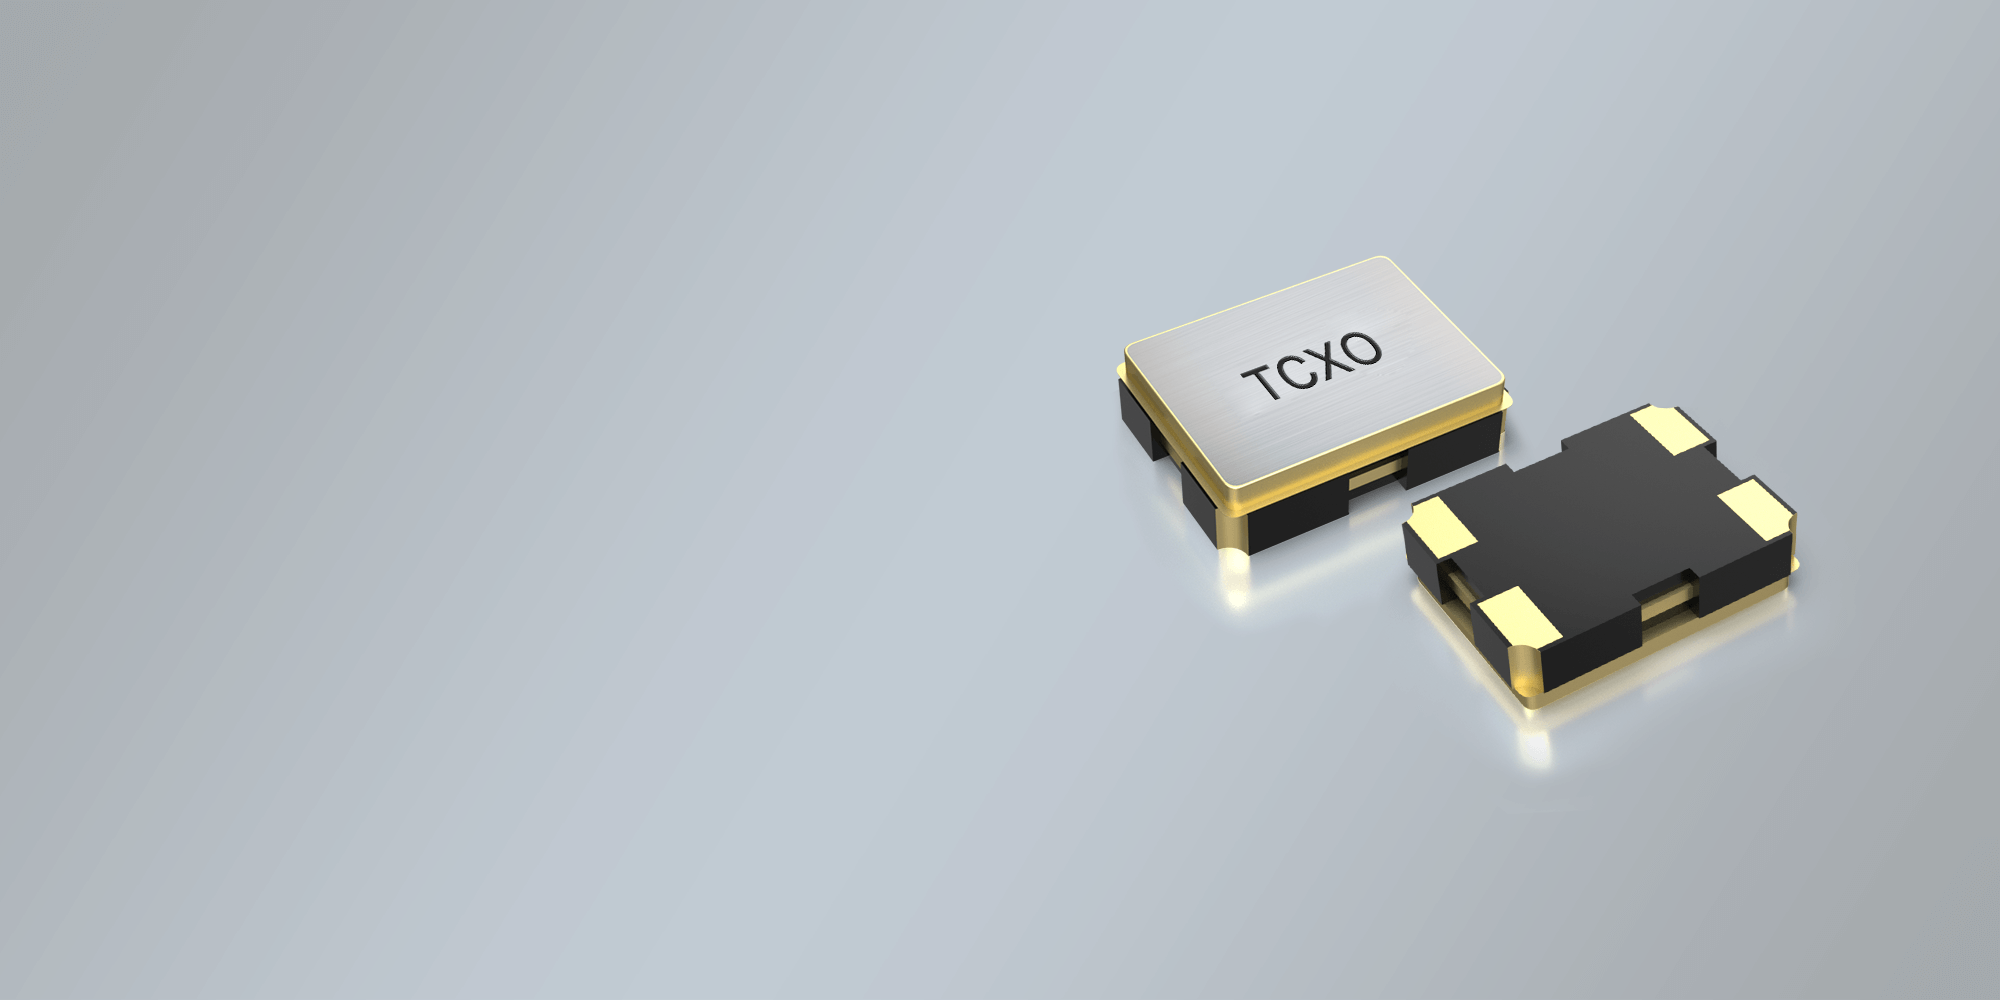 SMD TCXO OSCILLATOR 1.6 x 1.2 mm